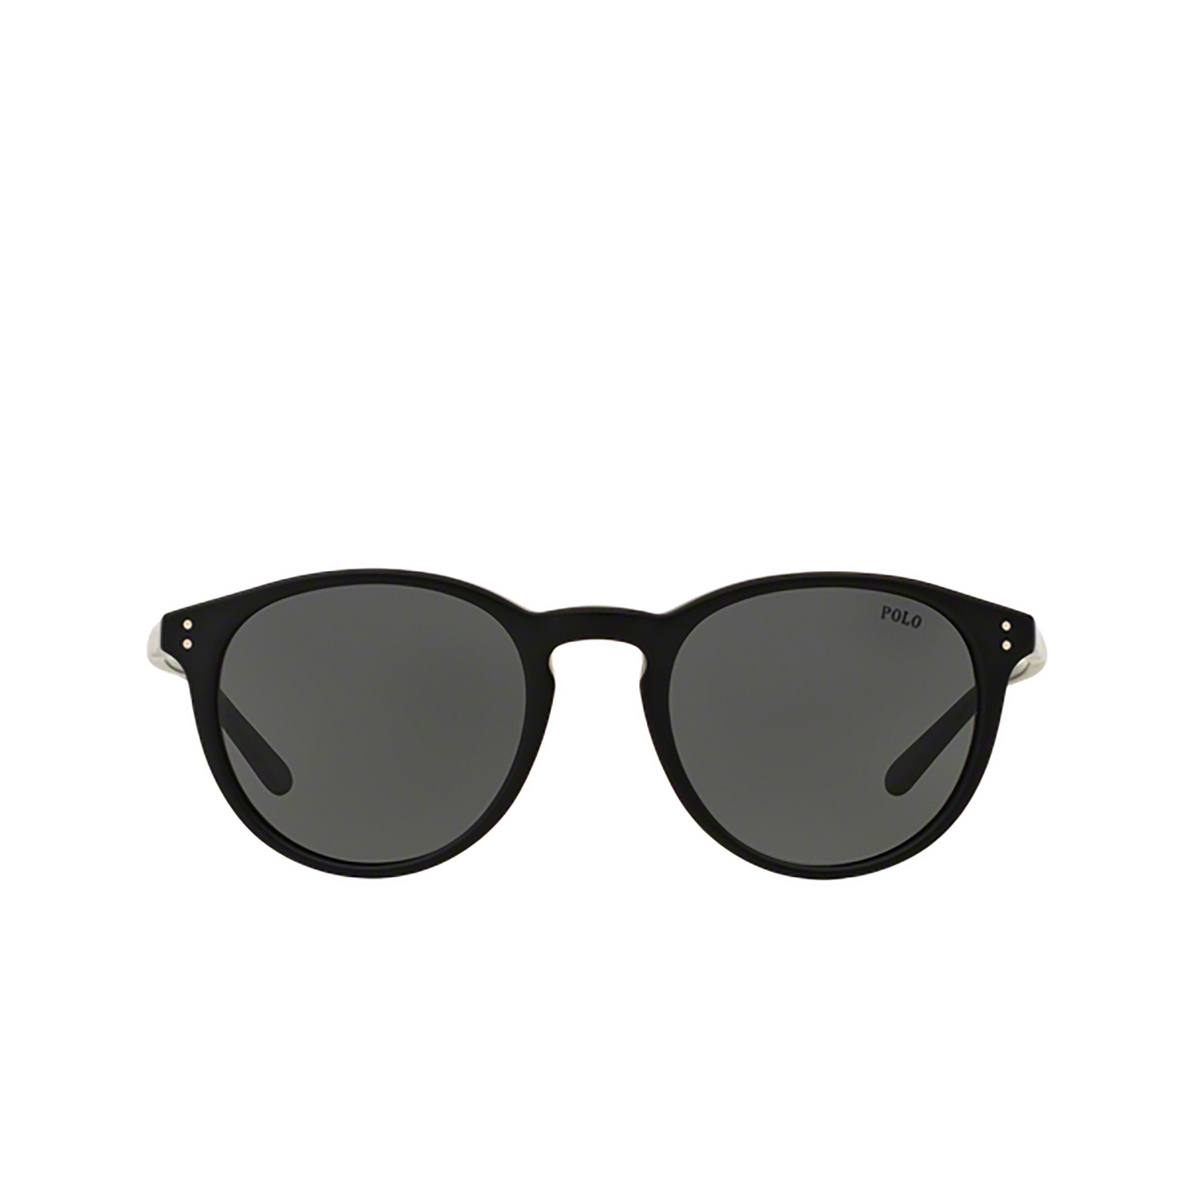 Polo Ralph Lauren® Round Sunglasses: PH4110 color Matte Black 528487 - front view.